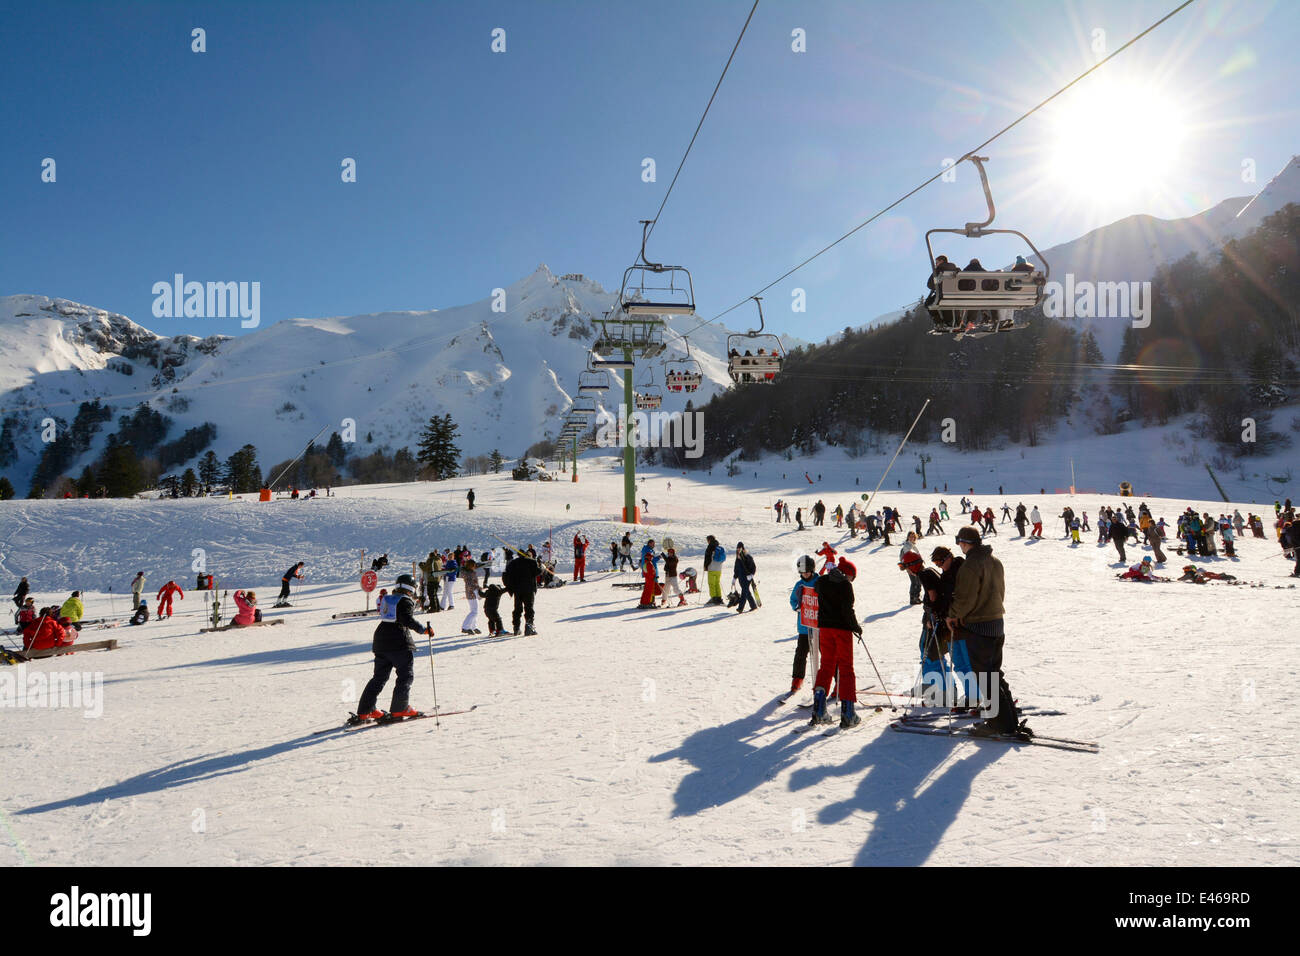 Le Mont Dore ski resort, Sancy, Auvergne, Francia Foto de stock